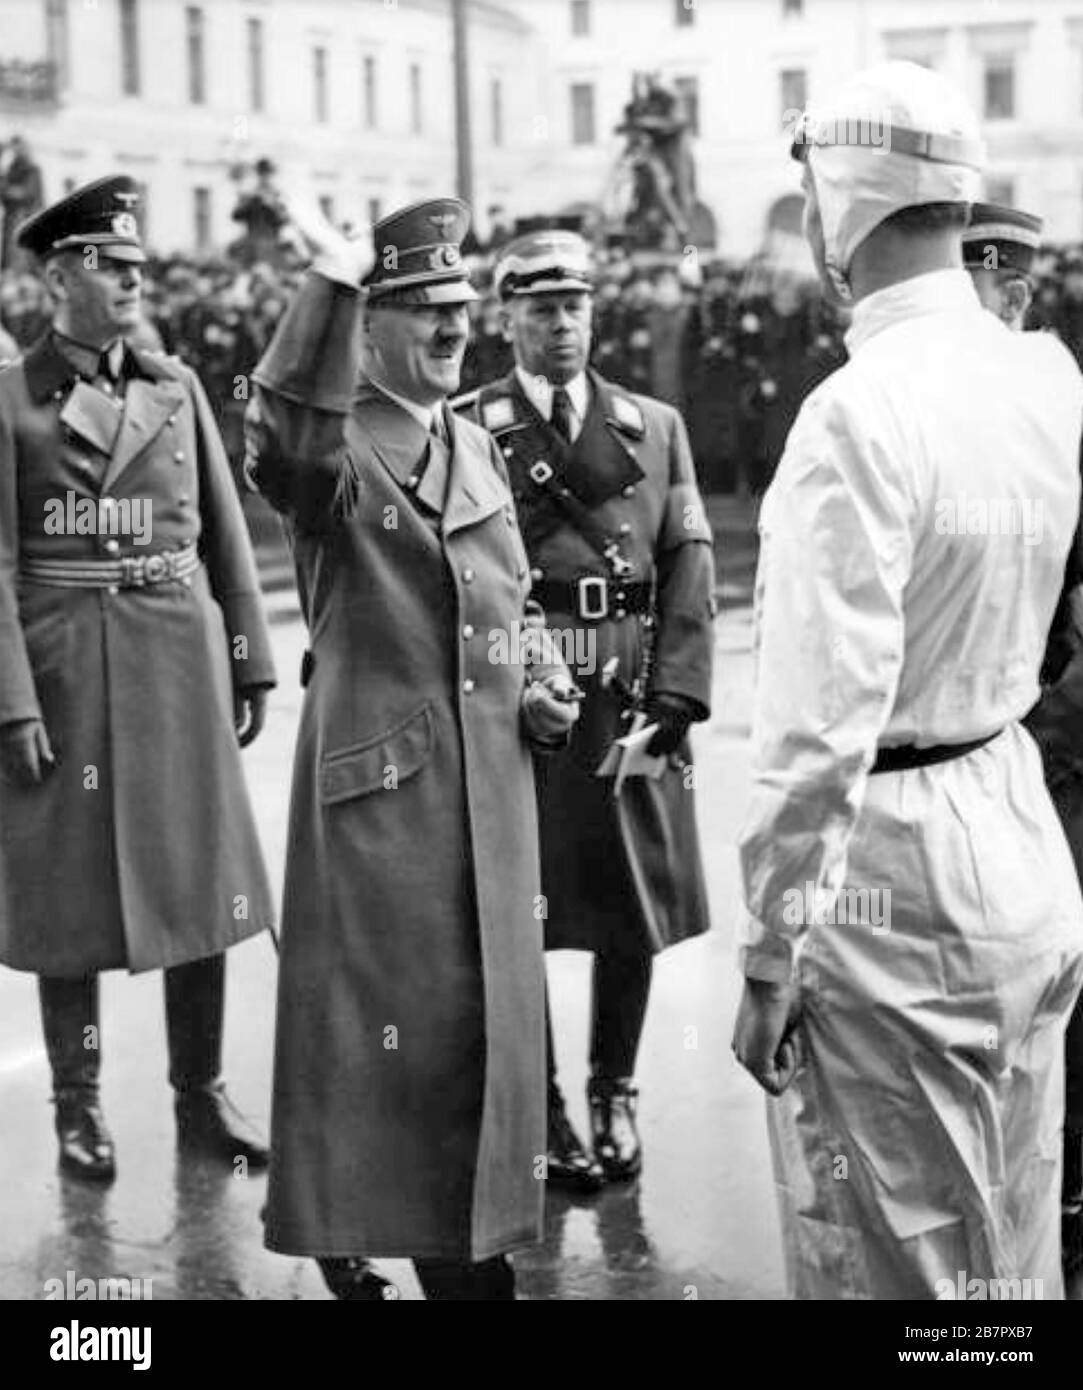 ADOLF HITLER (1889-1945) accueille le pilote de course britannique Richard Seaman après avoir ouvert le salon automobile de Berlin, le 17 février 1939 avec le lieutenant général Wilhelm Keitel à l'extrême gauche. Banque D'Images